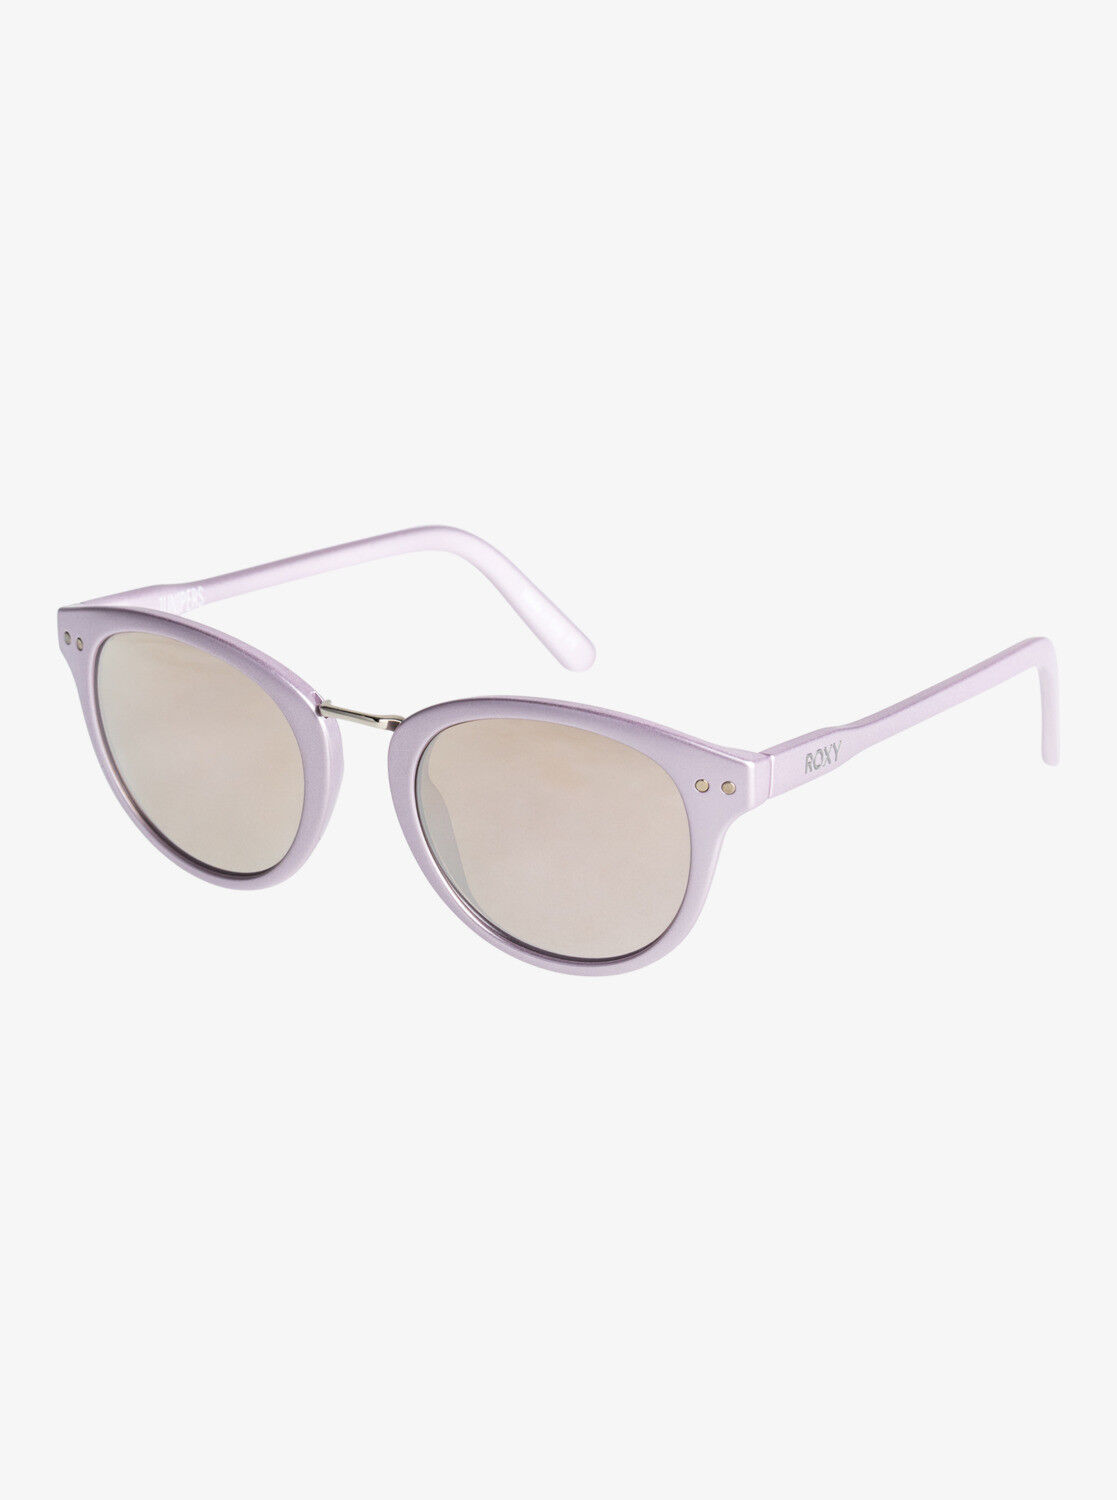 Roxy Junipers - Sunglasses - Women's | Hardloop